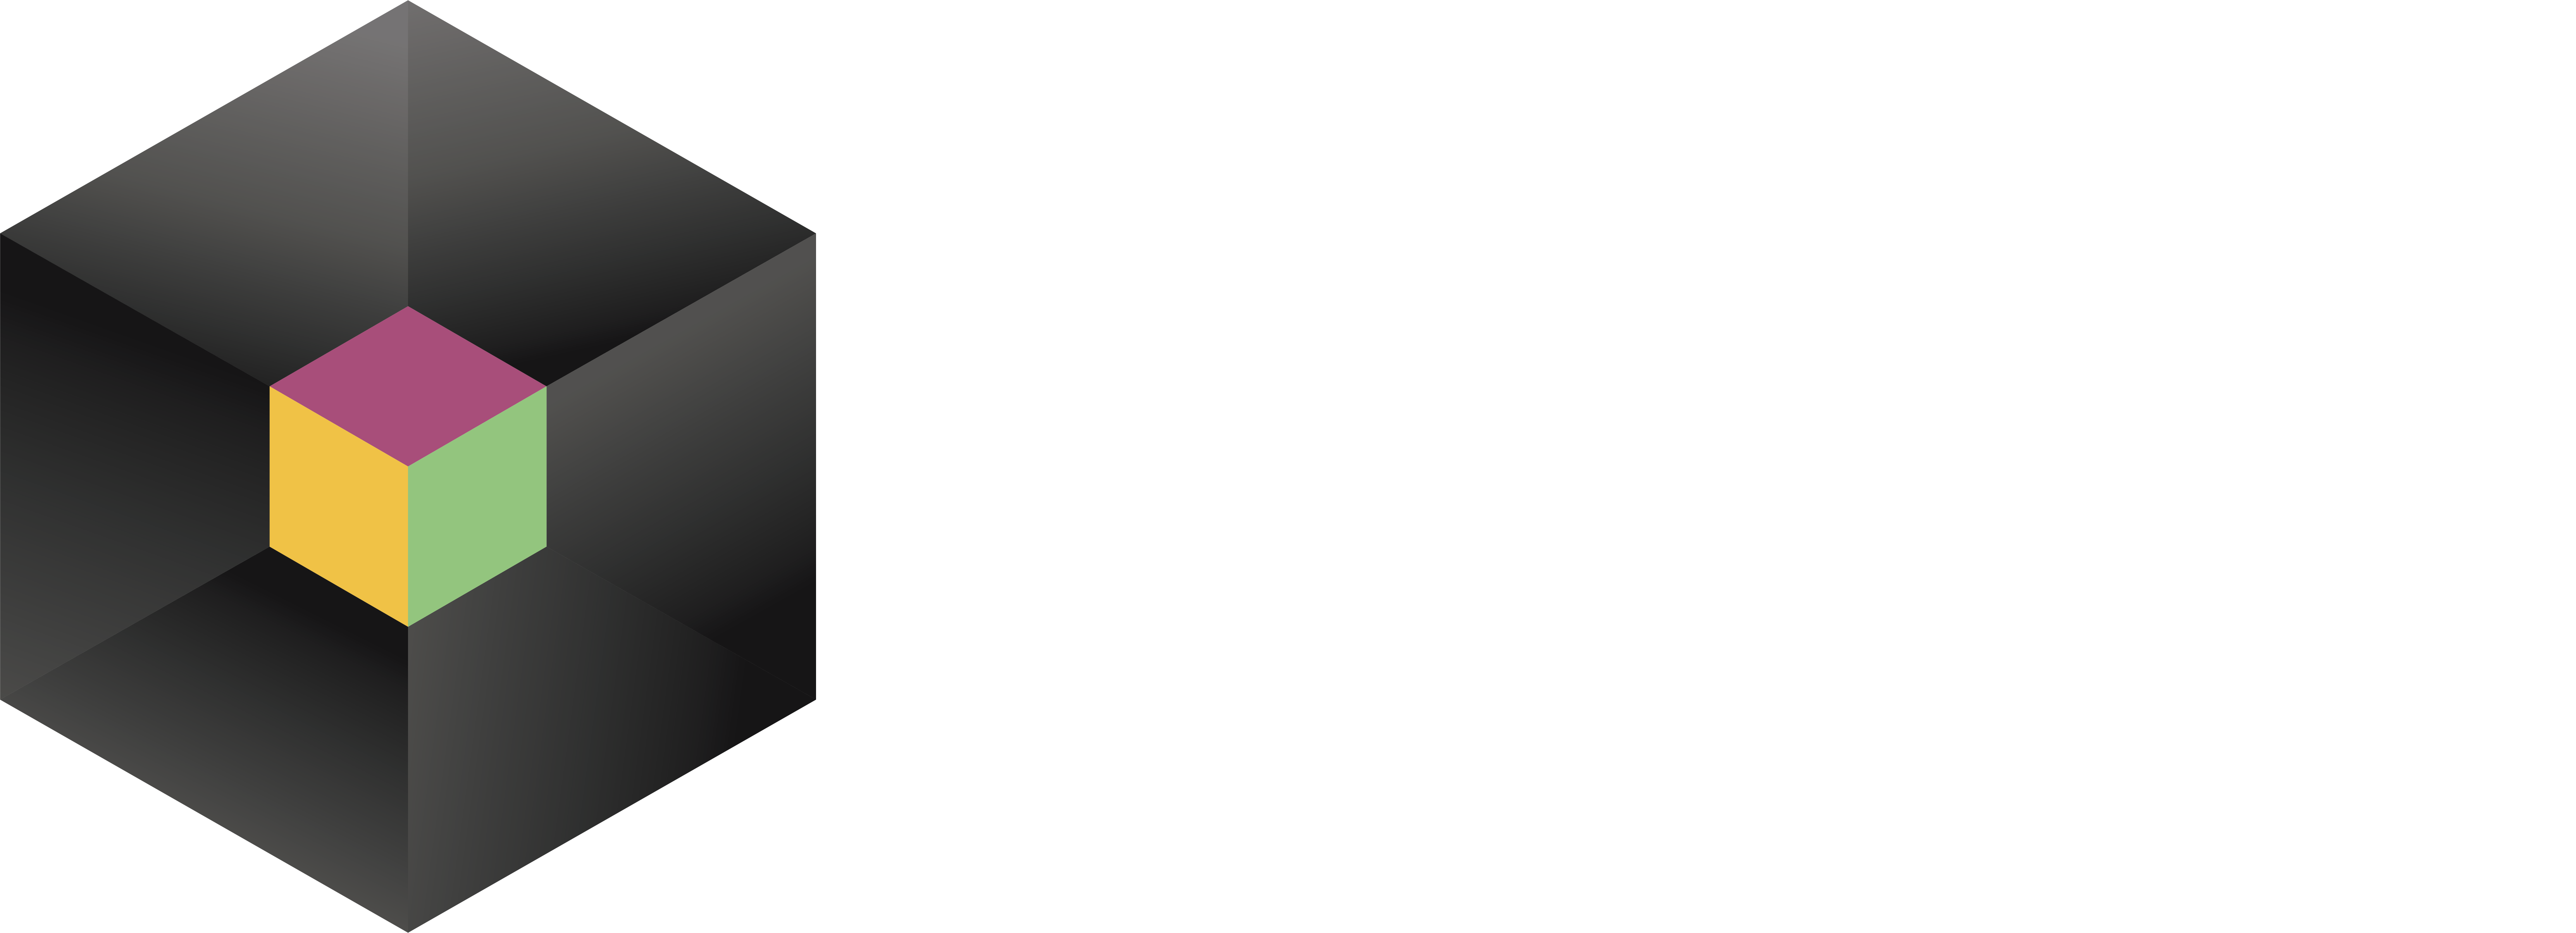 BAM® Analytix